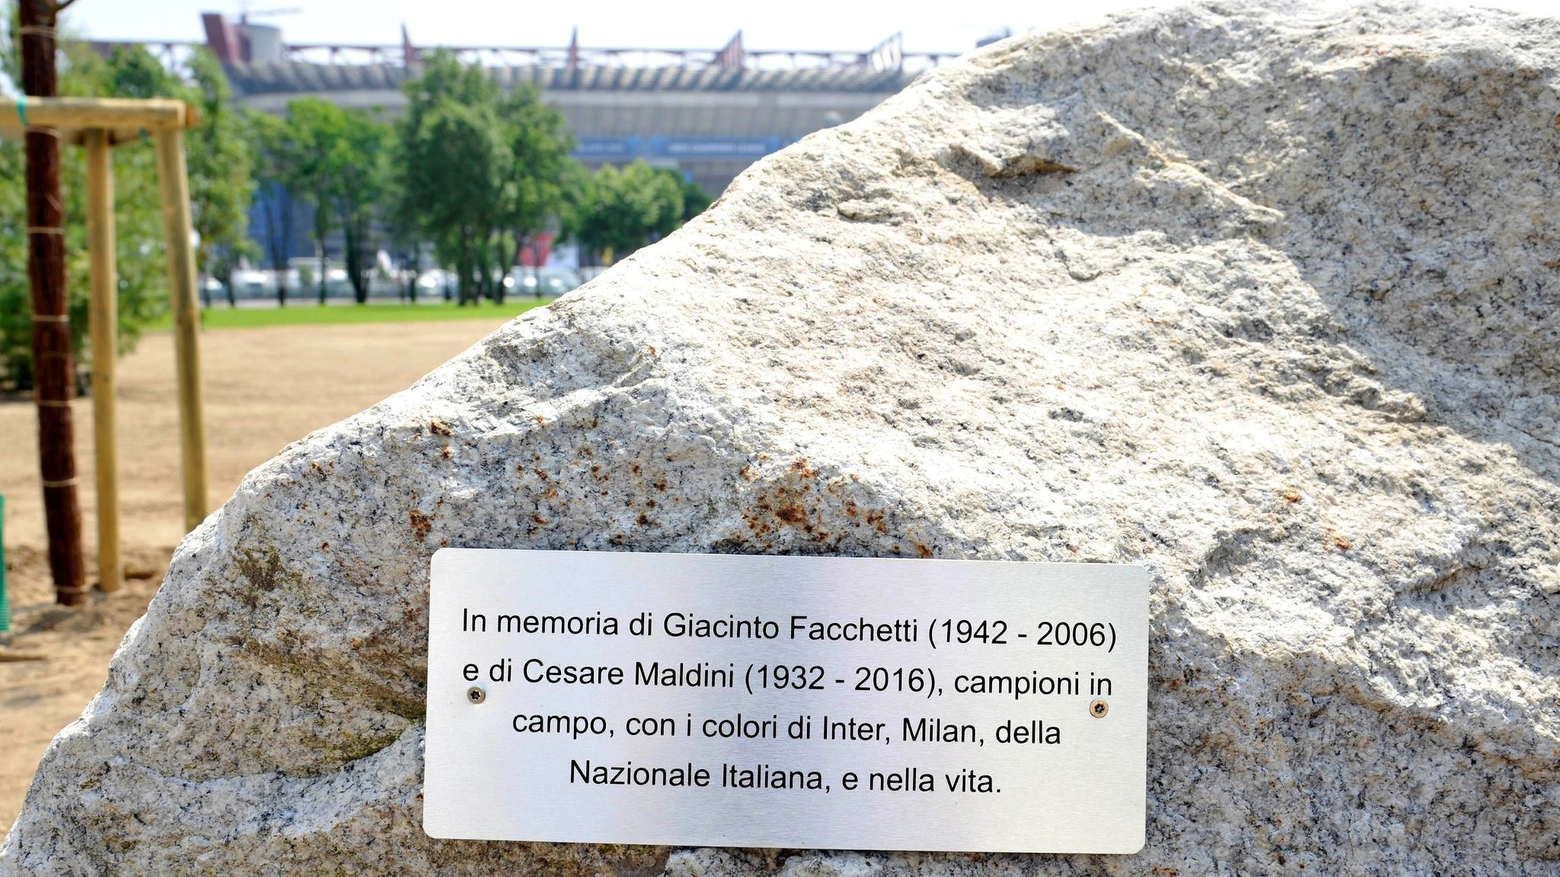 La targa in ricordo di Giacinto Facchetti e Cesare Maldini (foto Fb Comune di Milano)